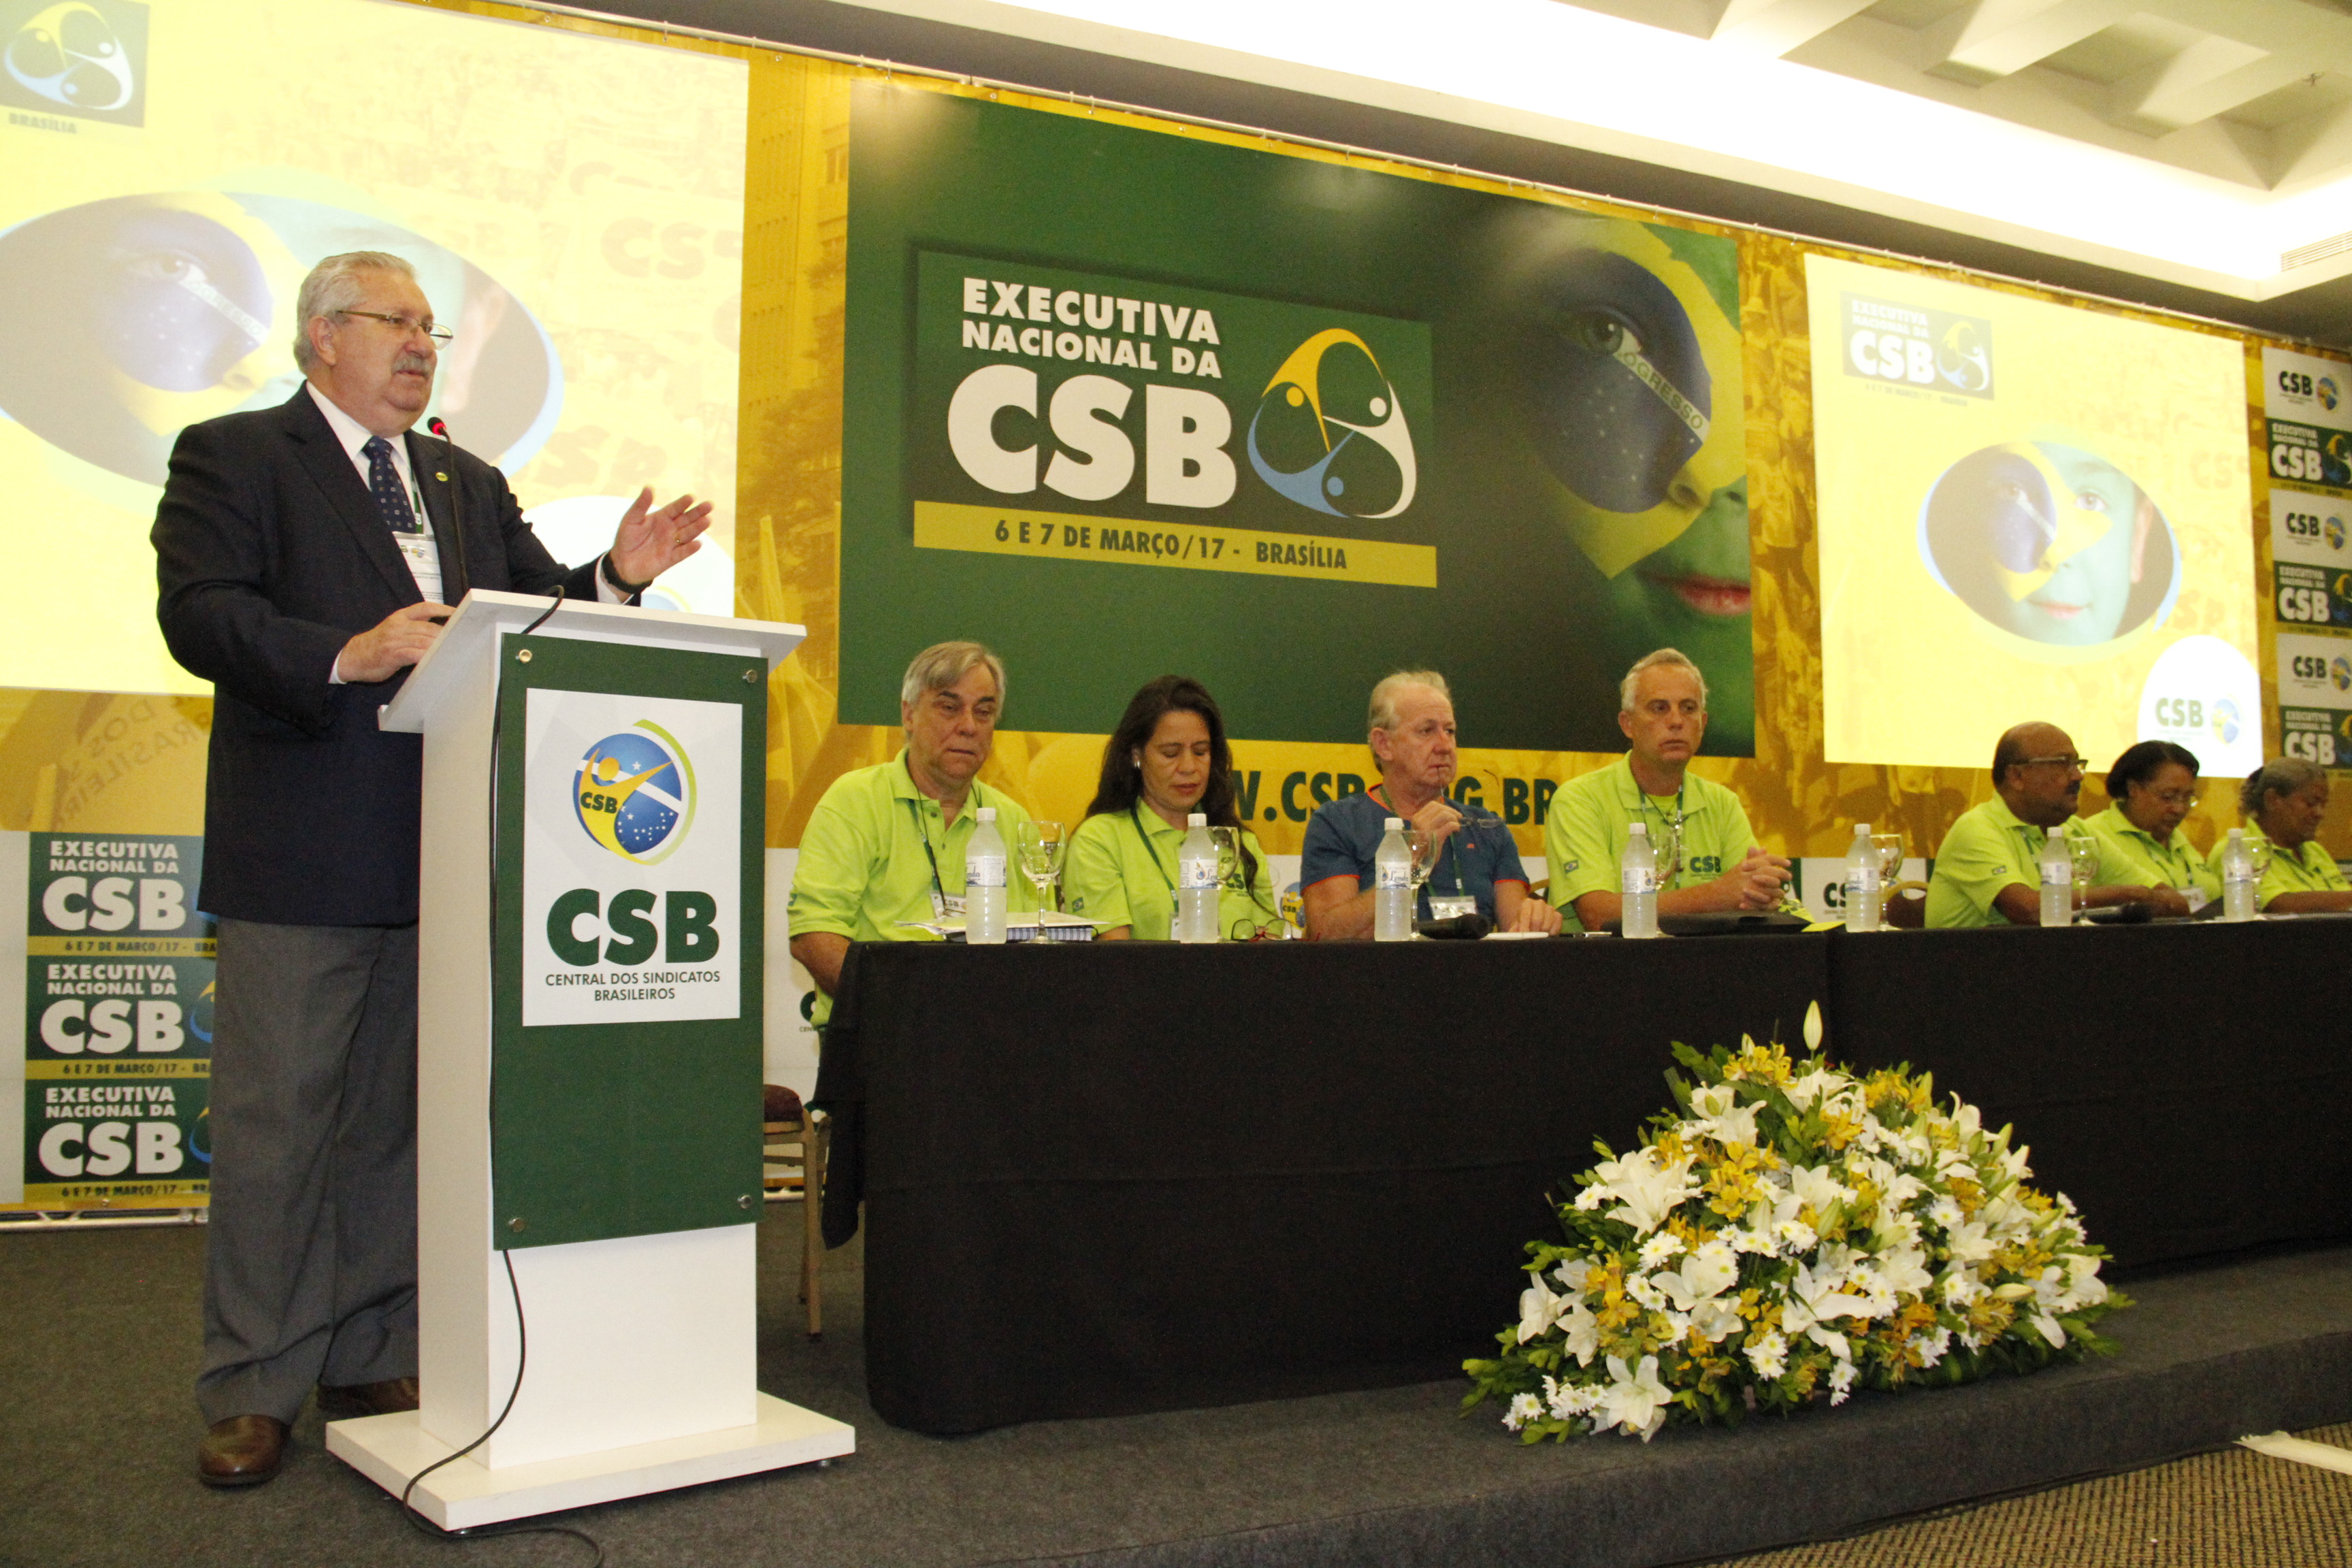 CSB apresenta agenda de congressos estaduais, cursos e seminários para 2017